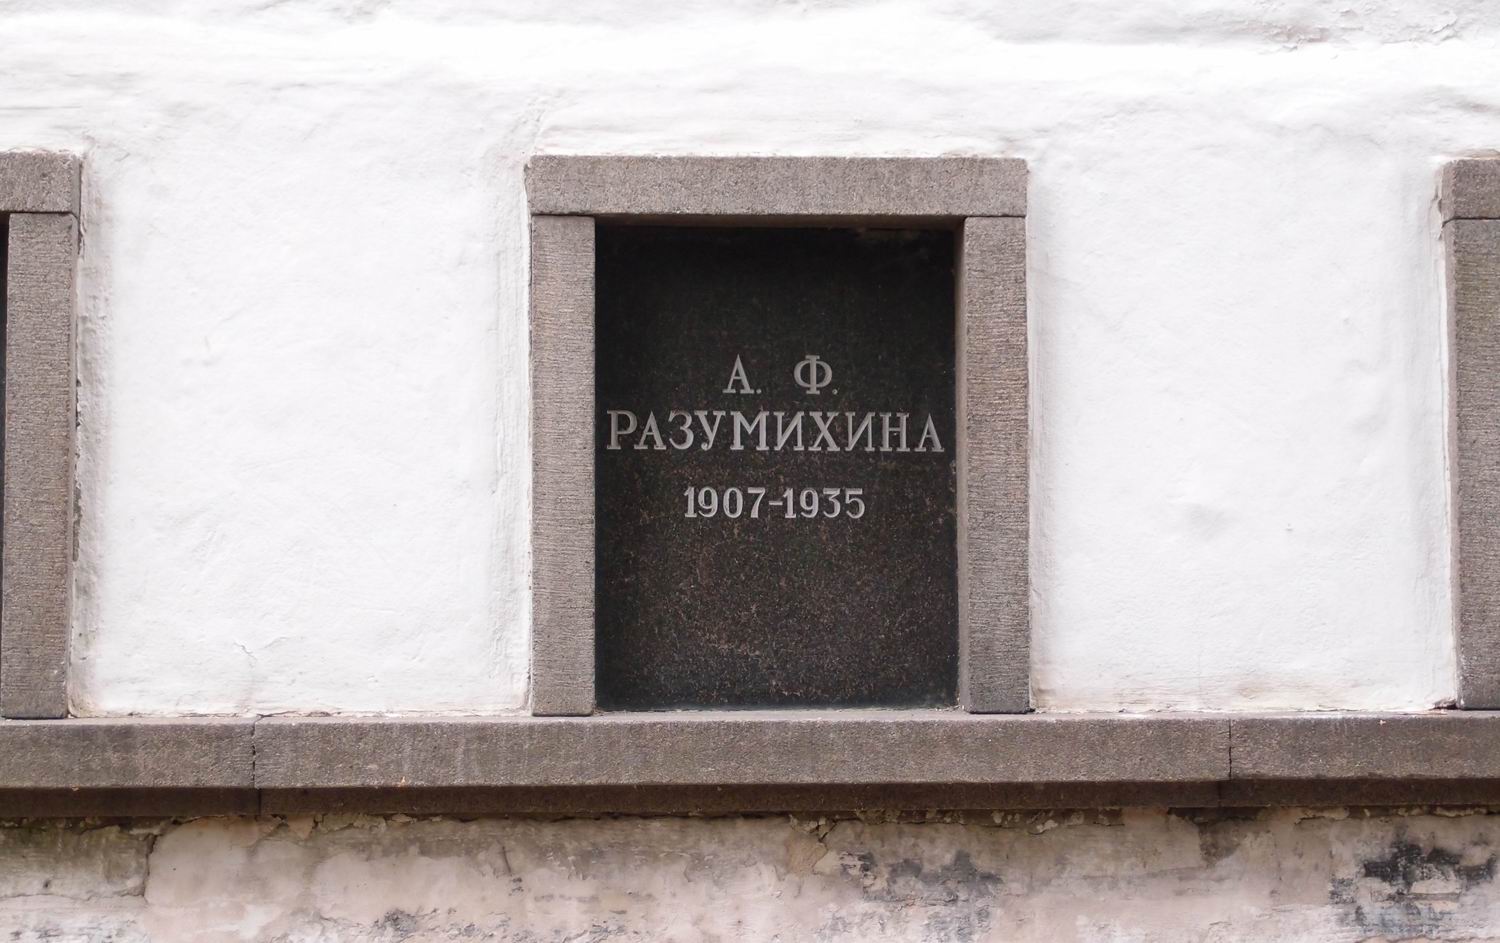 Плита на нише Разумихиной А.Ф. (1907-1935), на Новодевичьем кладбище (колумбарий [3]-15). Нажмите левую кнопку мыши, чтобы увидеть общий вид секции.